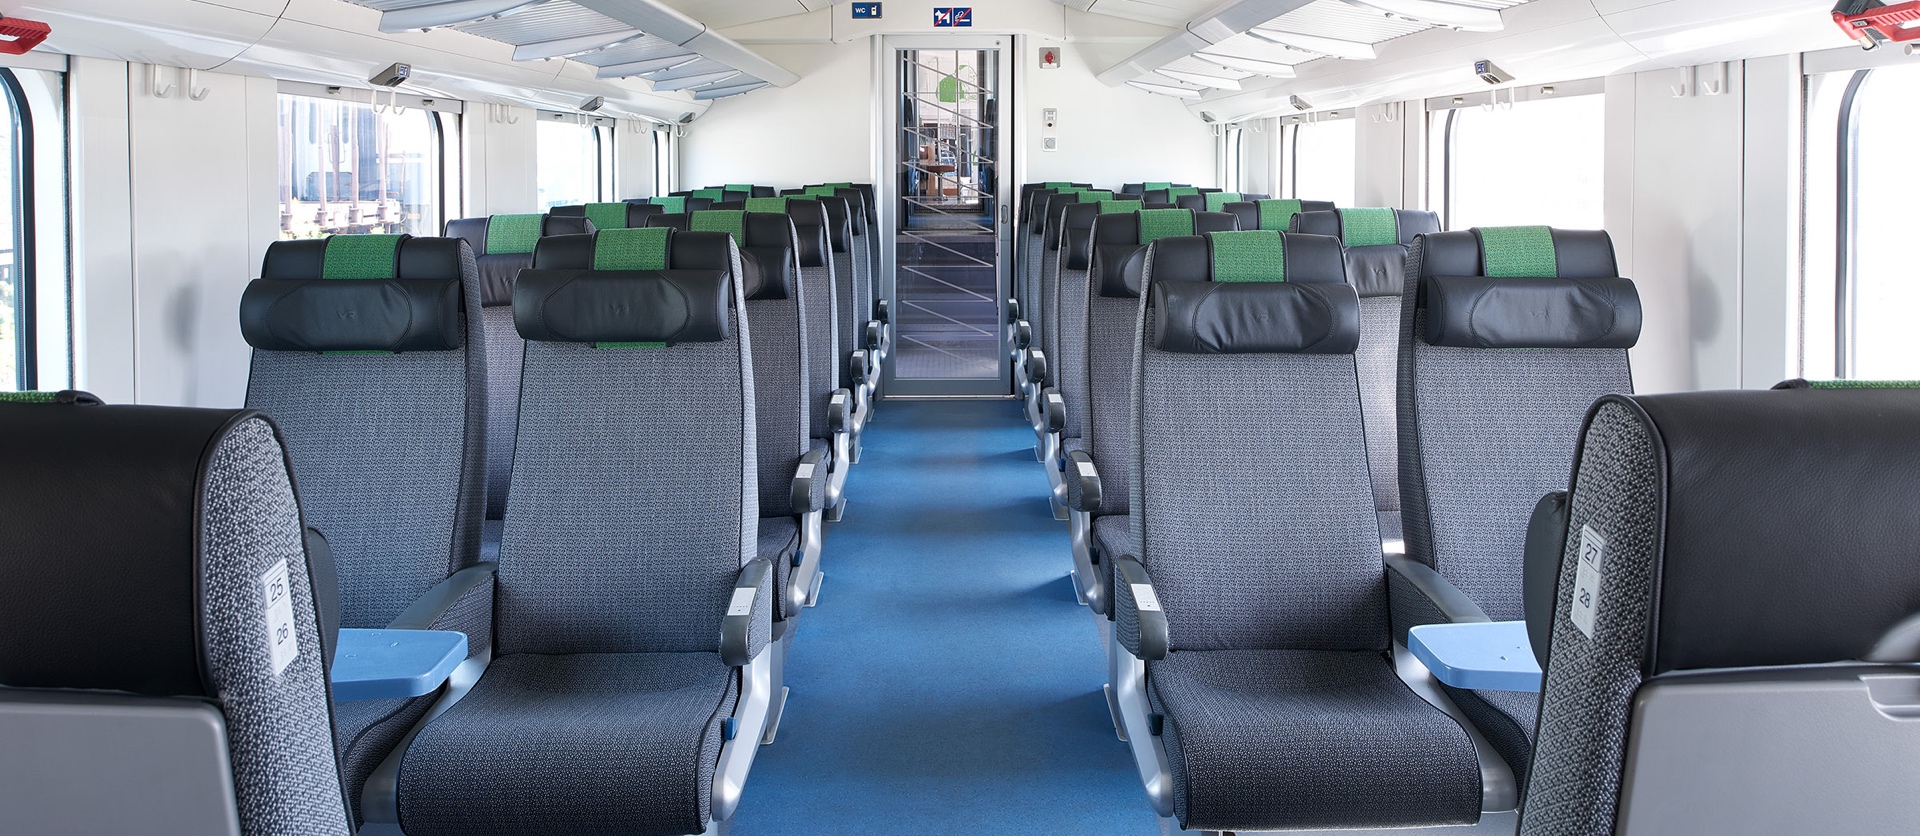 InterCity-tågen har två sittplatser bredvid varandra på båda sidor av mittgången. Tågen har även bordsgrupper för fyra personer.